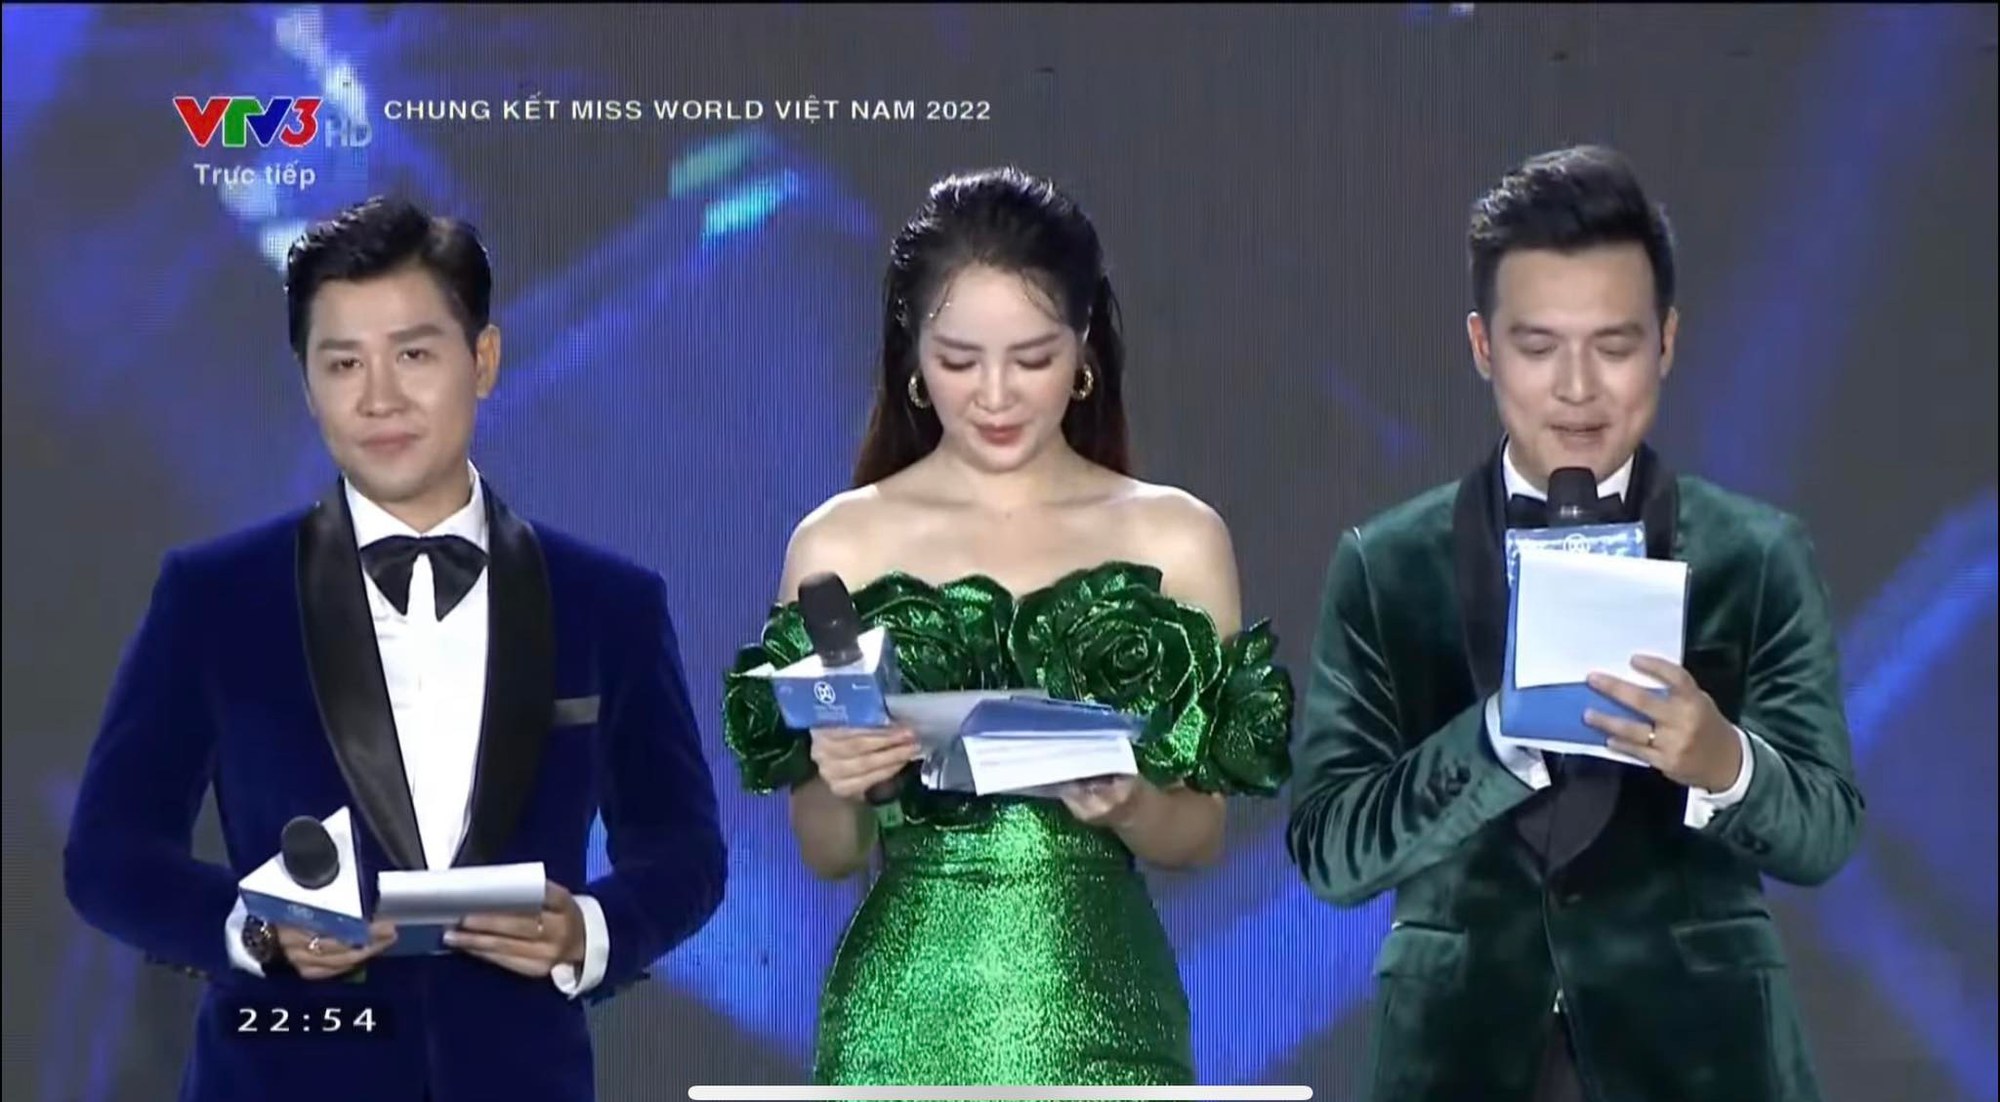 Loạt sự cố đáng tiếc trong đêm chung kết Miss World Vietnam 2022 - Ảnh 3.